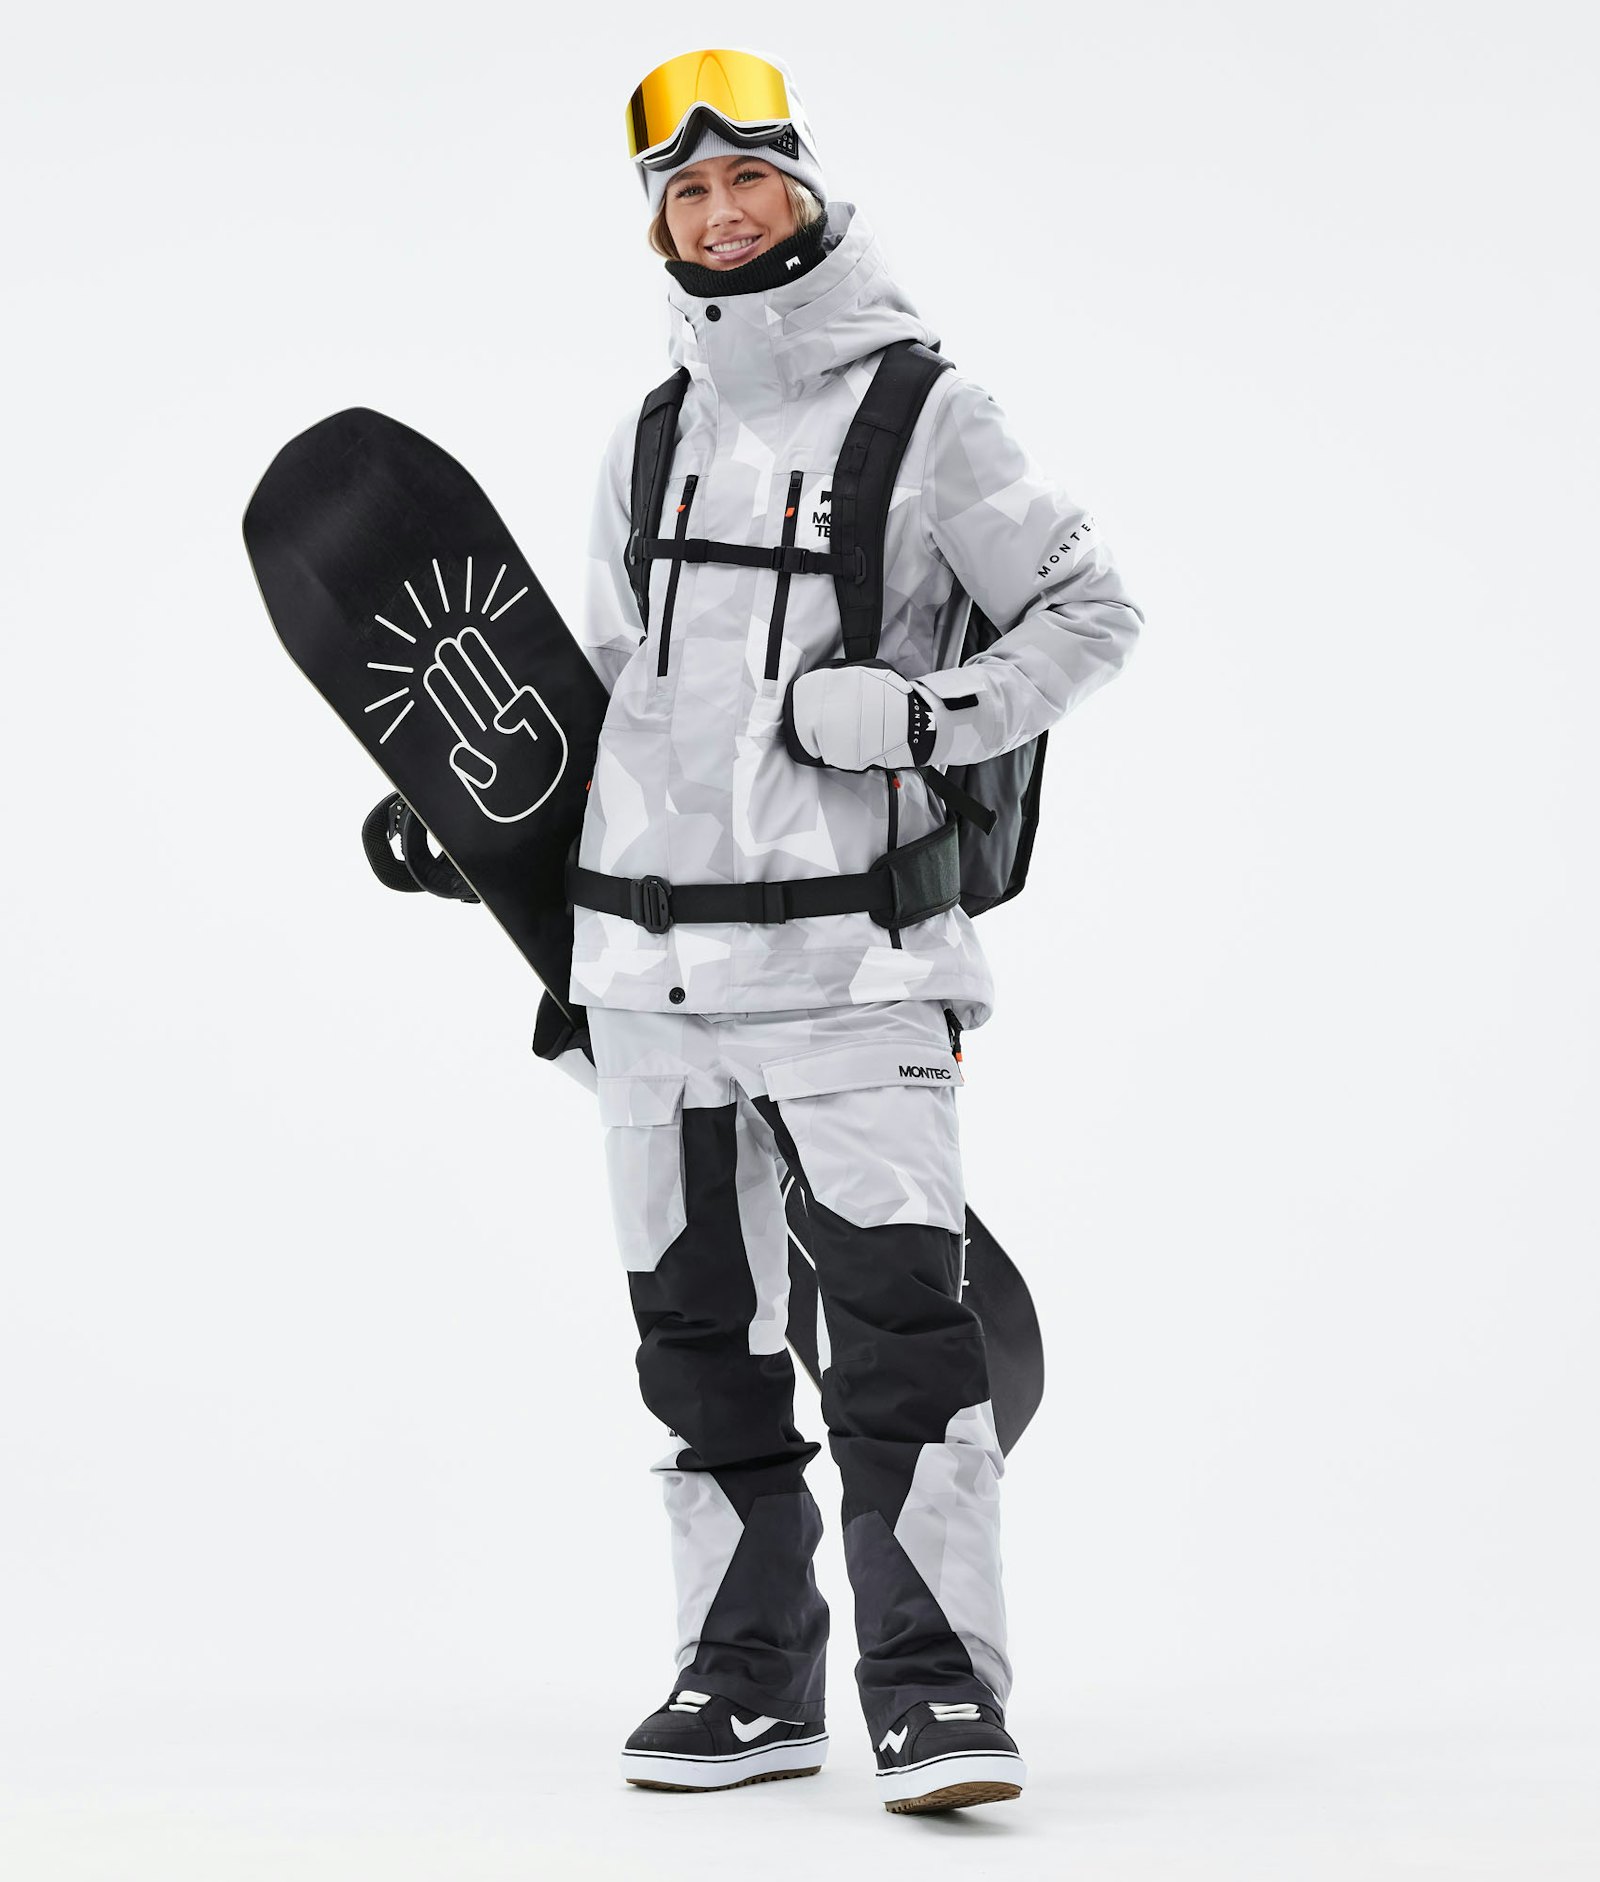 Fawk W 2021 Veste Snowboard Femme Snow Camo